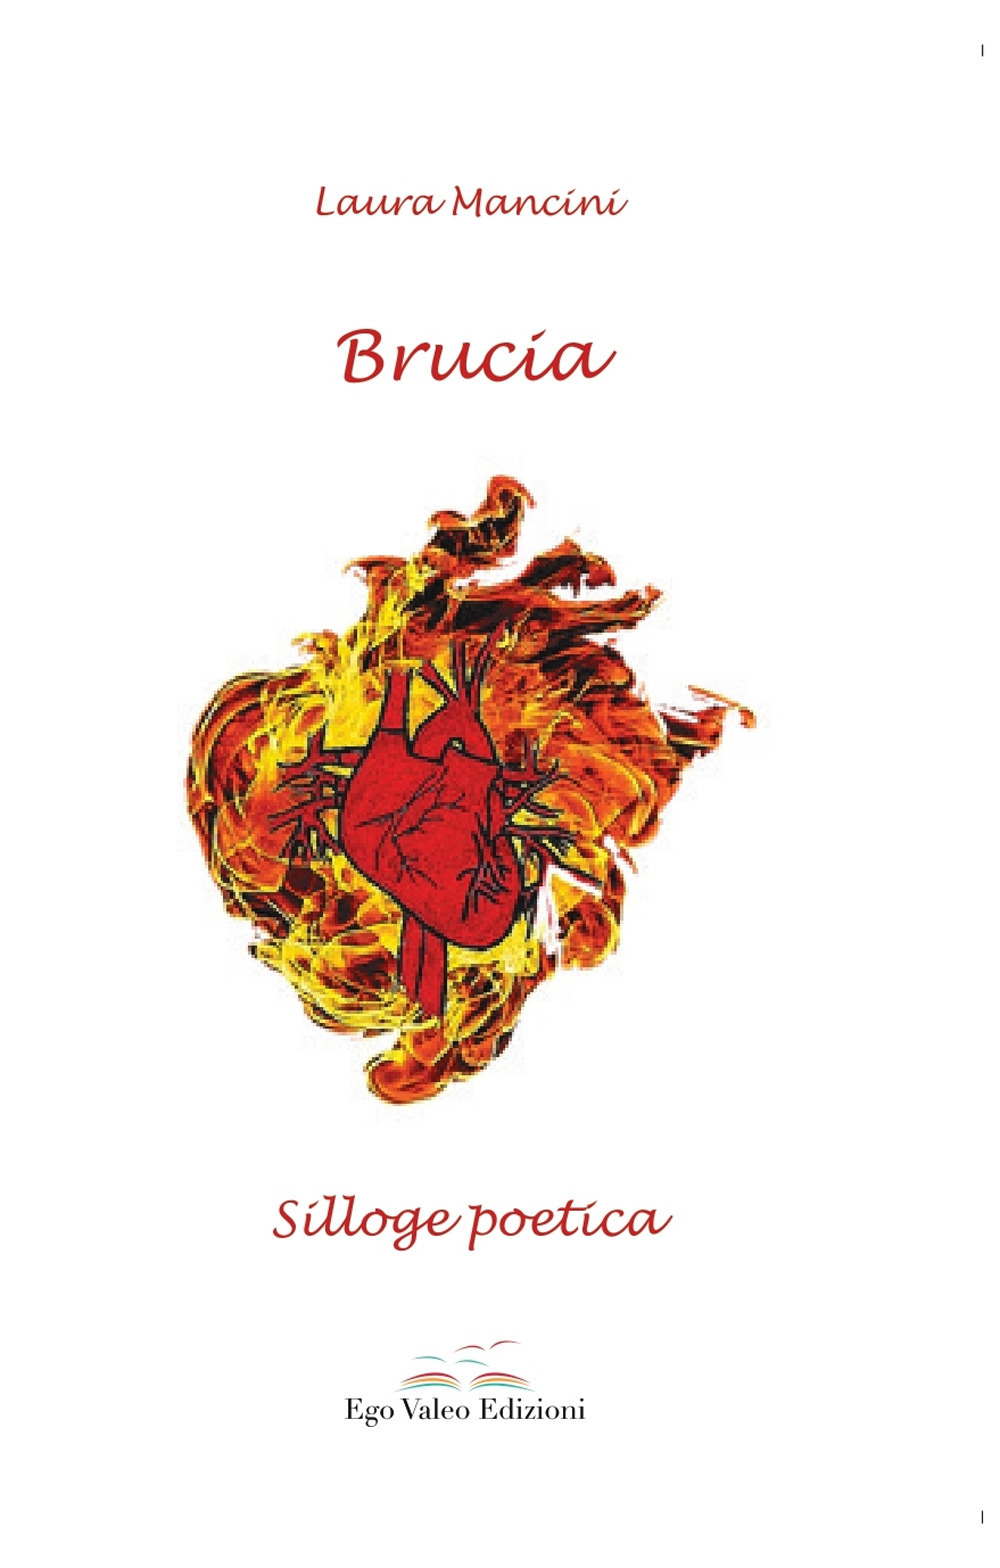 Brucia